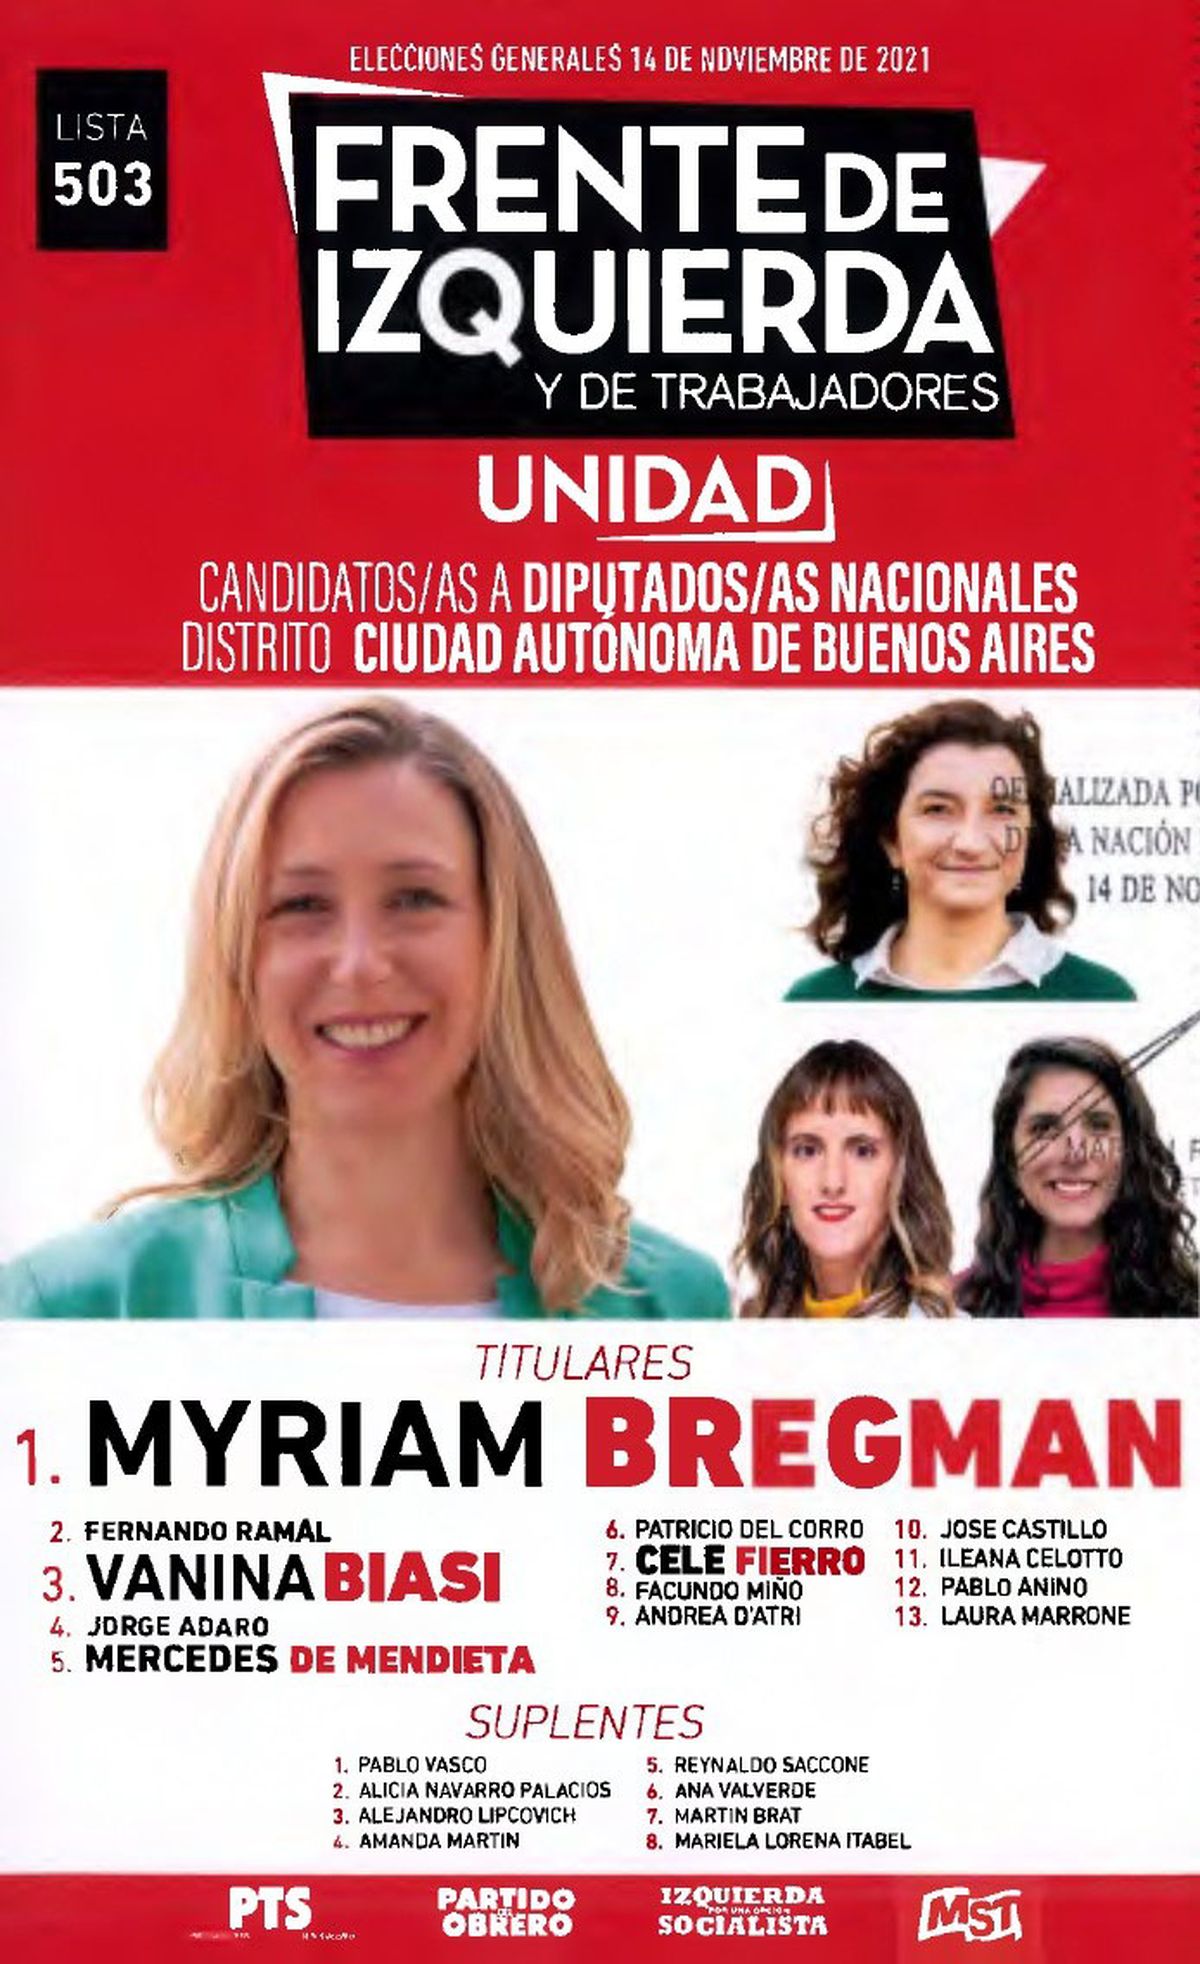 Myriam Bregman Sus Propuestas Para Las Elecciones 2021 9122